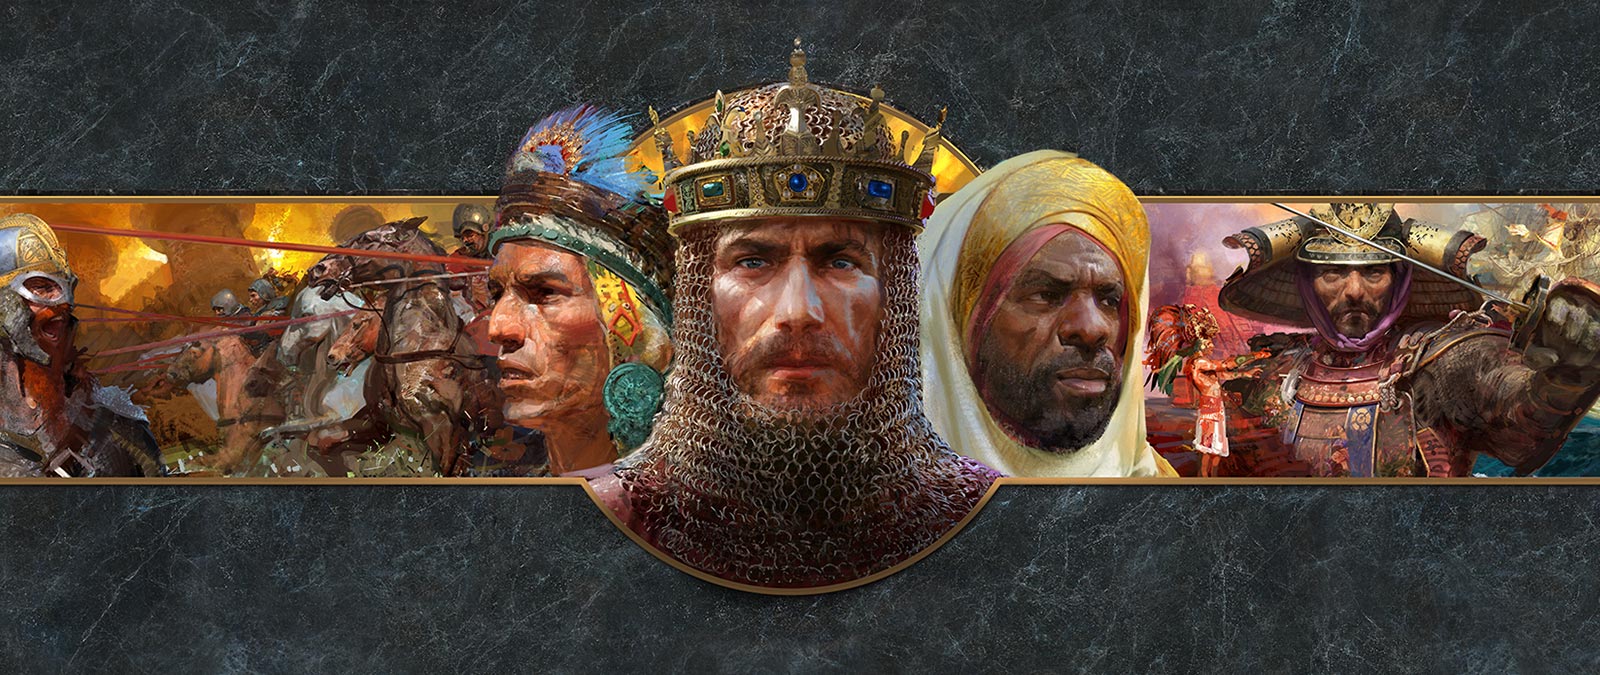 戦闘シーンを背景にした、様々な文明の指導者の頭部写真。